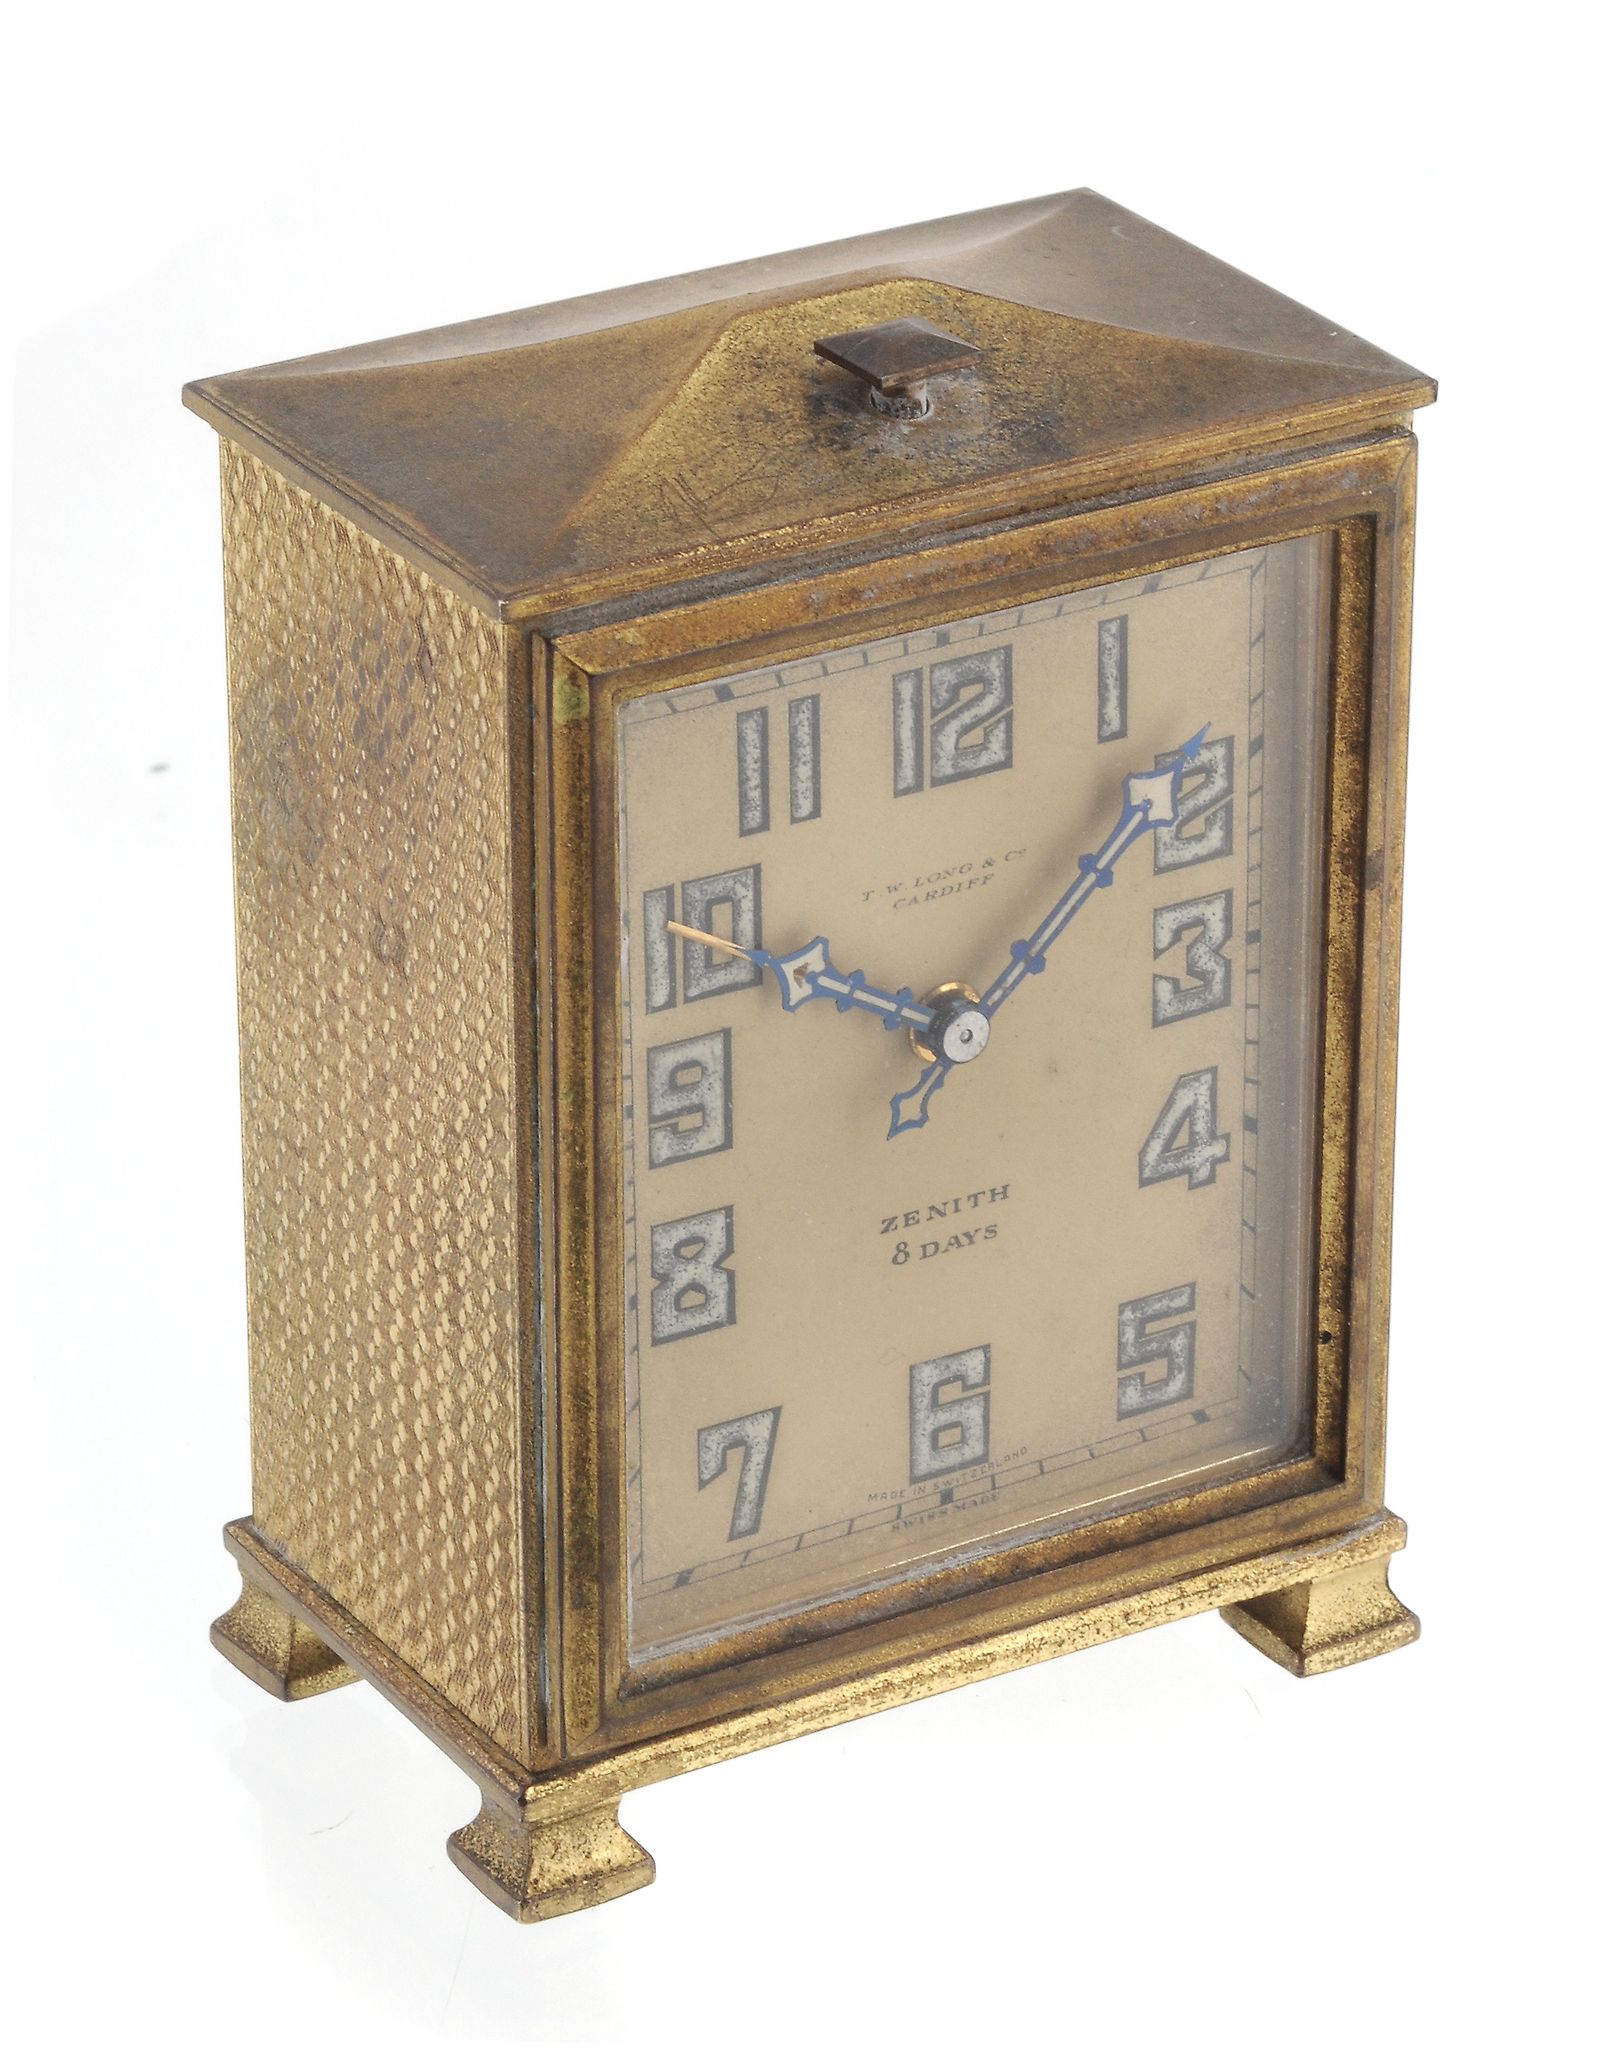 T.W. Long & Co, Cardiff, a brass 8 day clock  T.W. Long  &  Co, Cardiff, a brass 8 day clock,   the